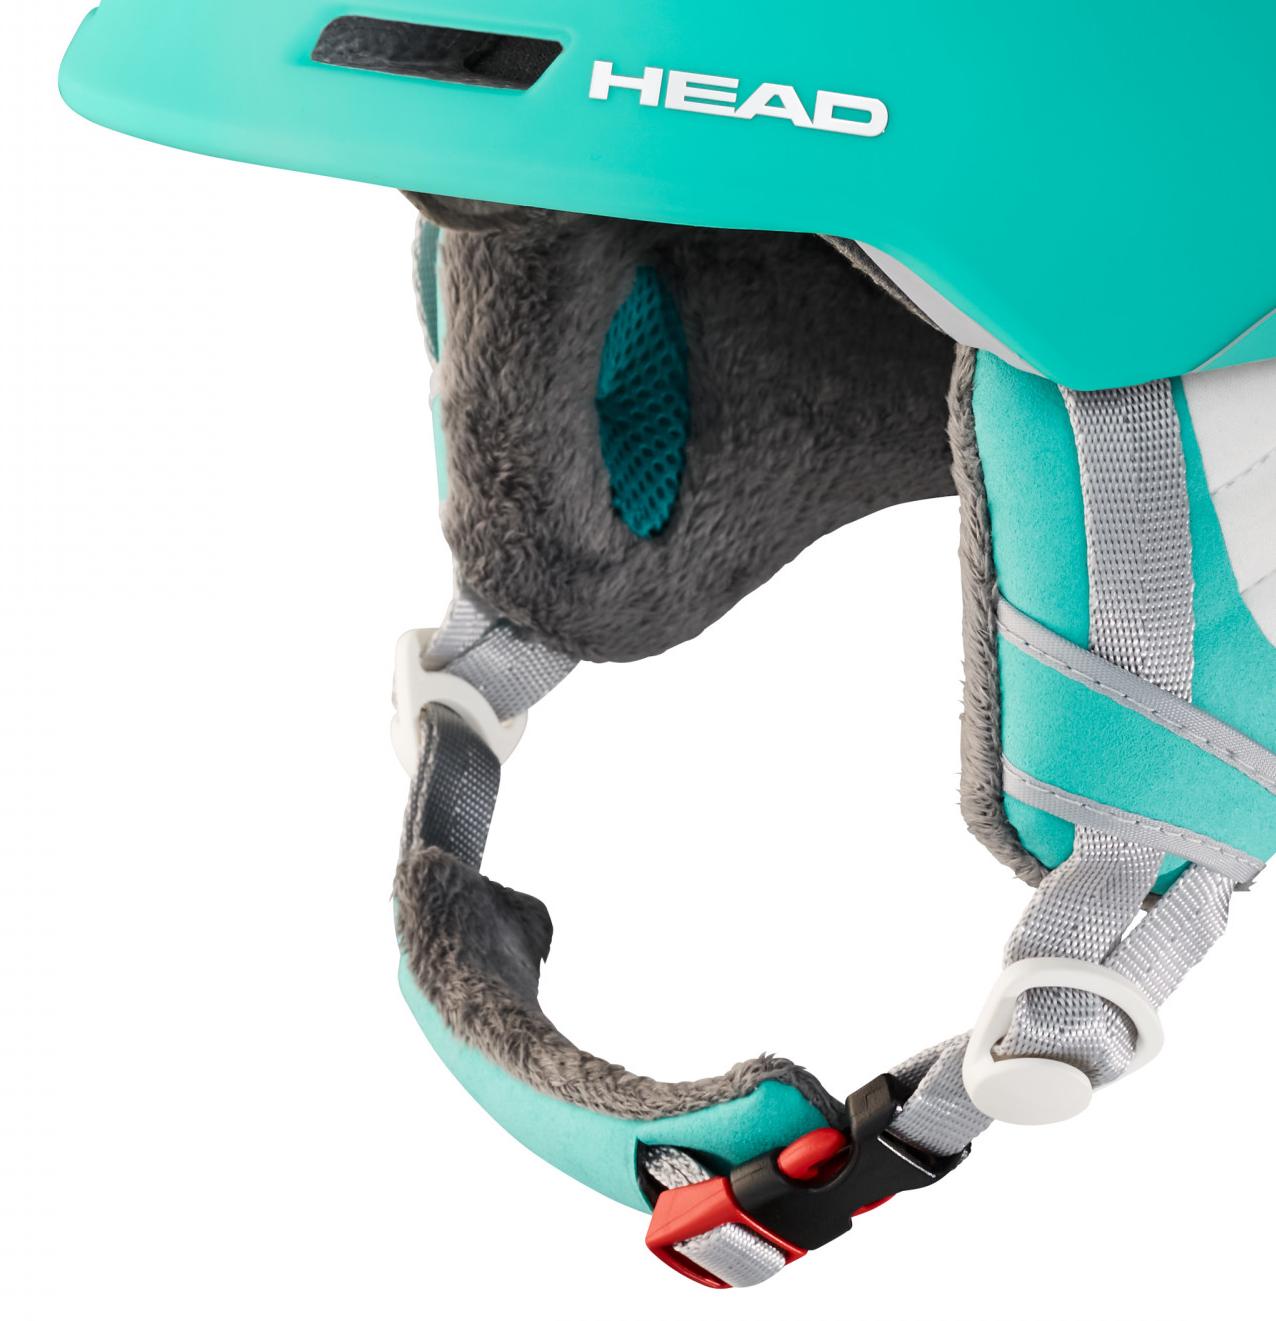 Зимний Шлем HEAD Vanda Turquoise